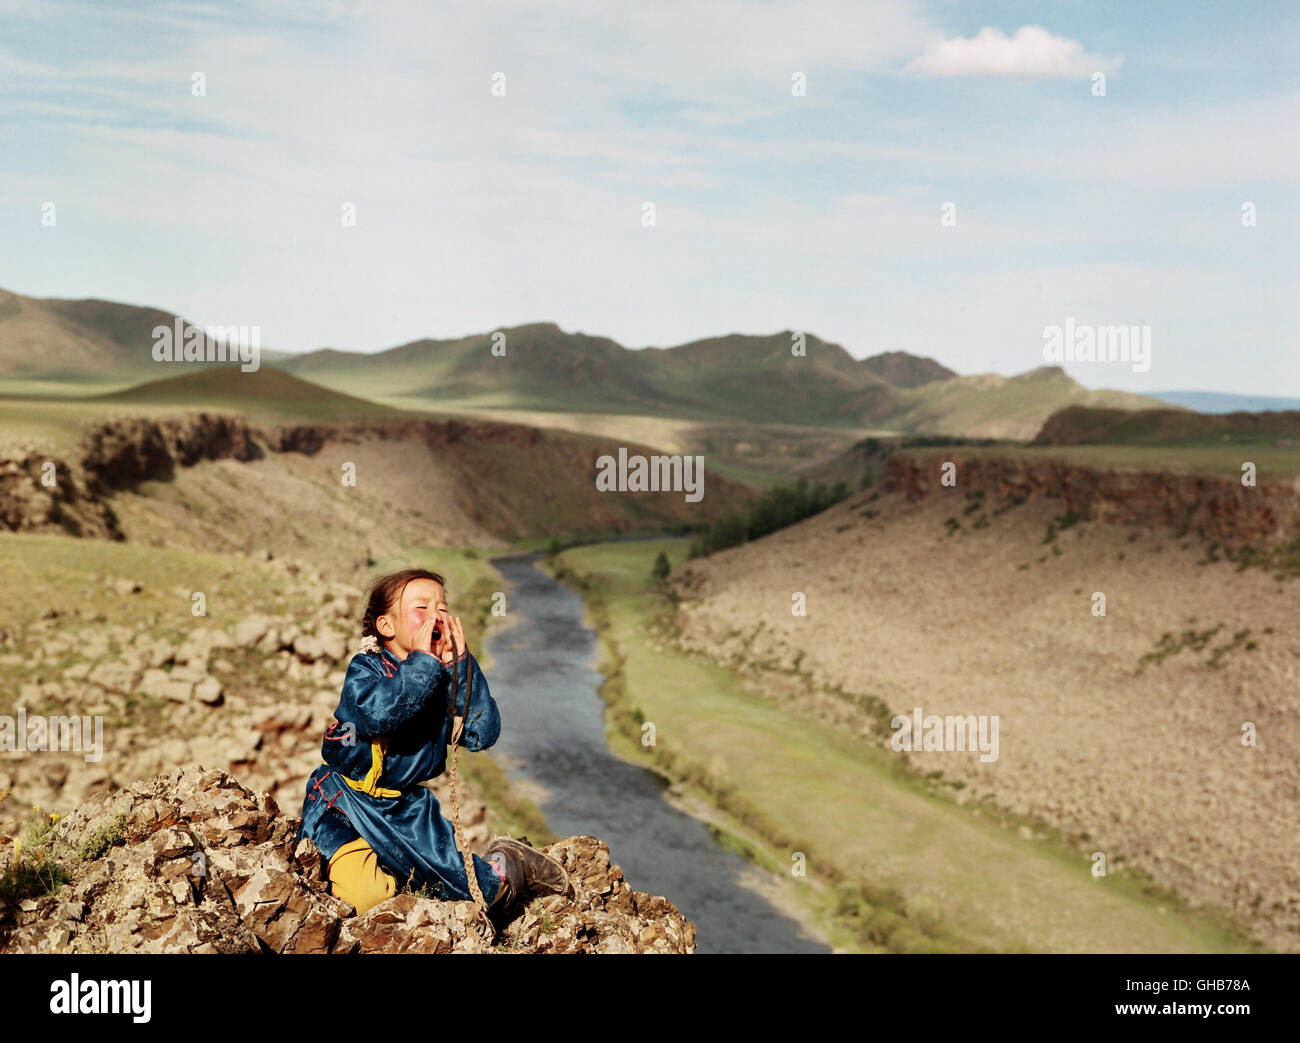 DIE HÖHLE DES GELBEN HUNDES D 2005 Byambasuren Davaa Nansal Batchuluun, die älteste Tochter der Nomadenfamilie, in der mongolischen Landschaft. Regie: Byambasuren Davaa Stock Photo